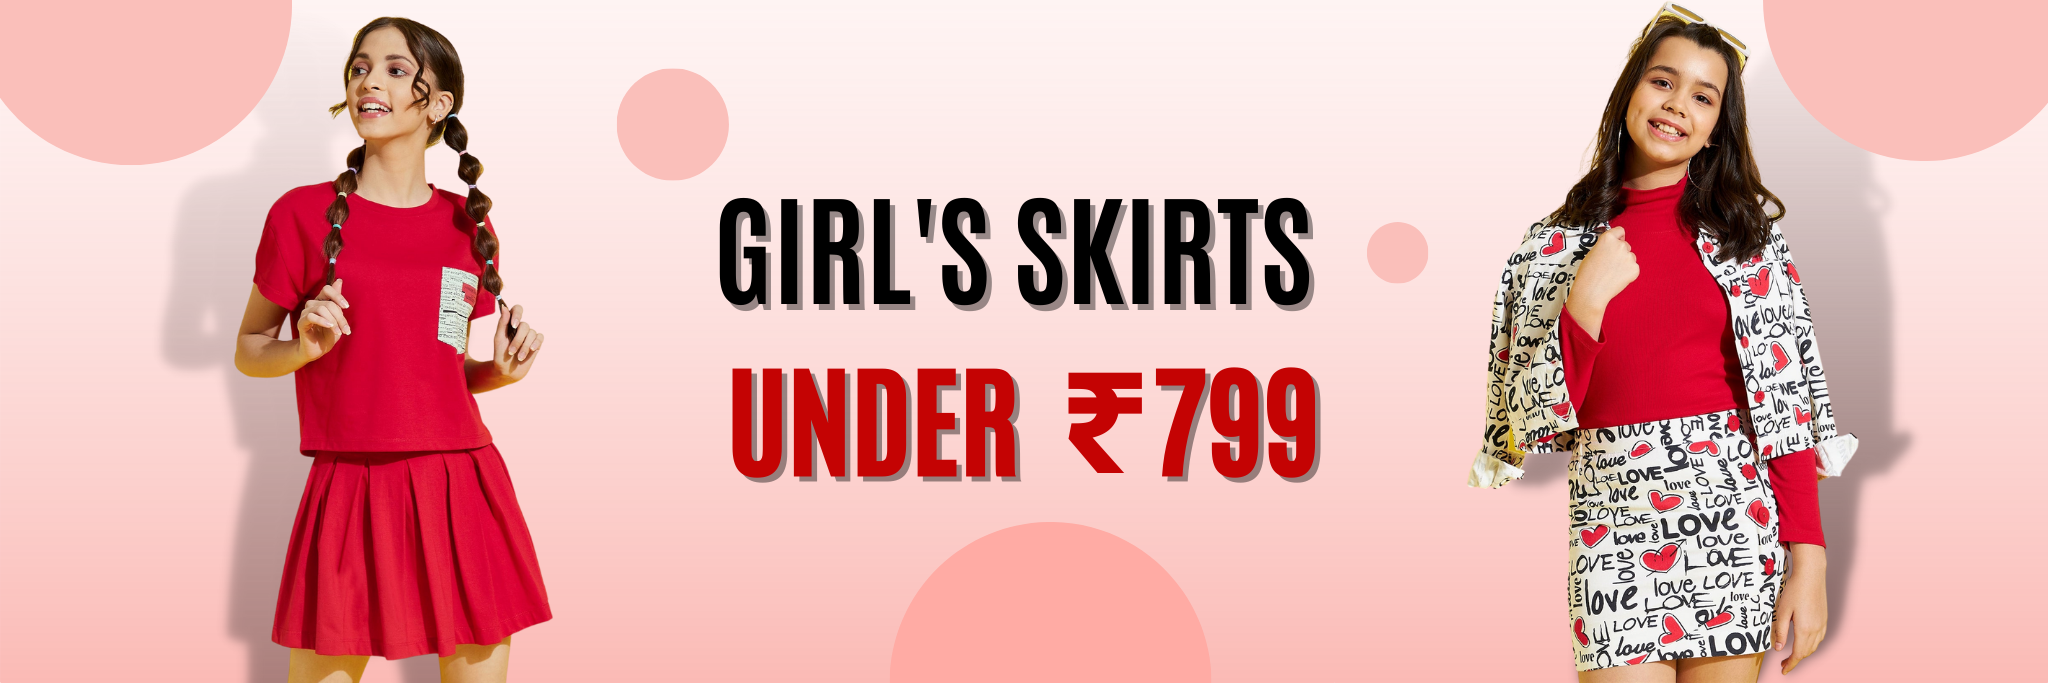 Girl's Skirts Under 799